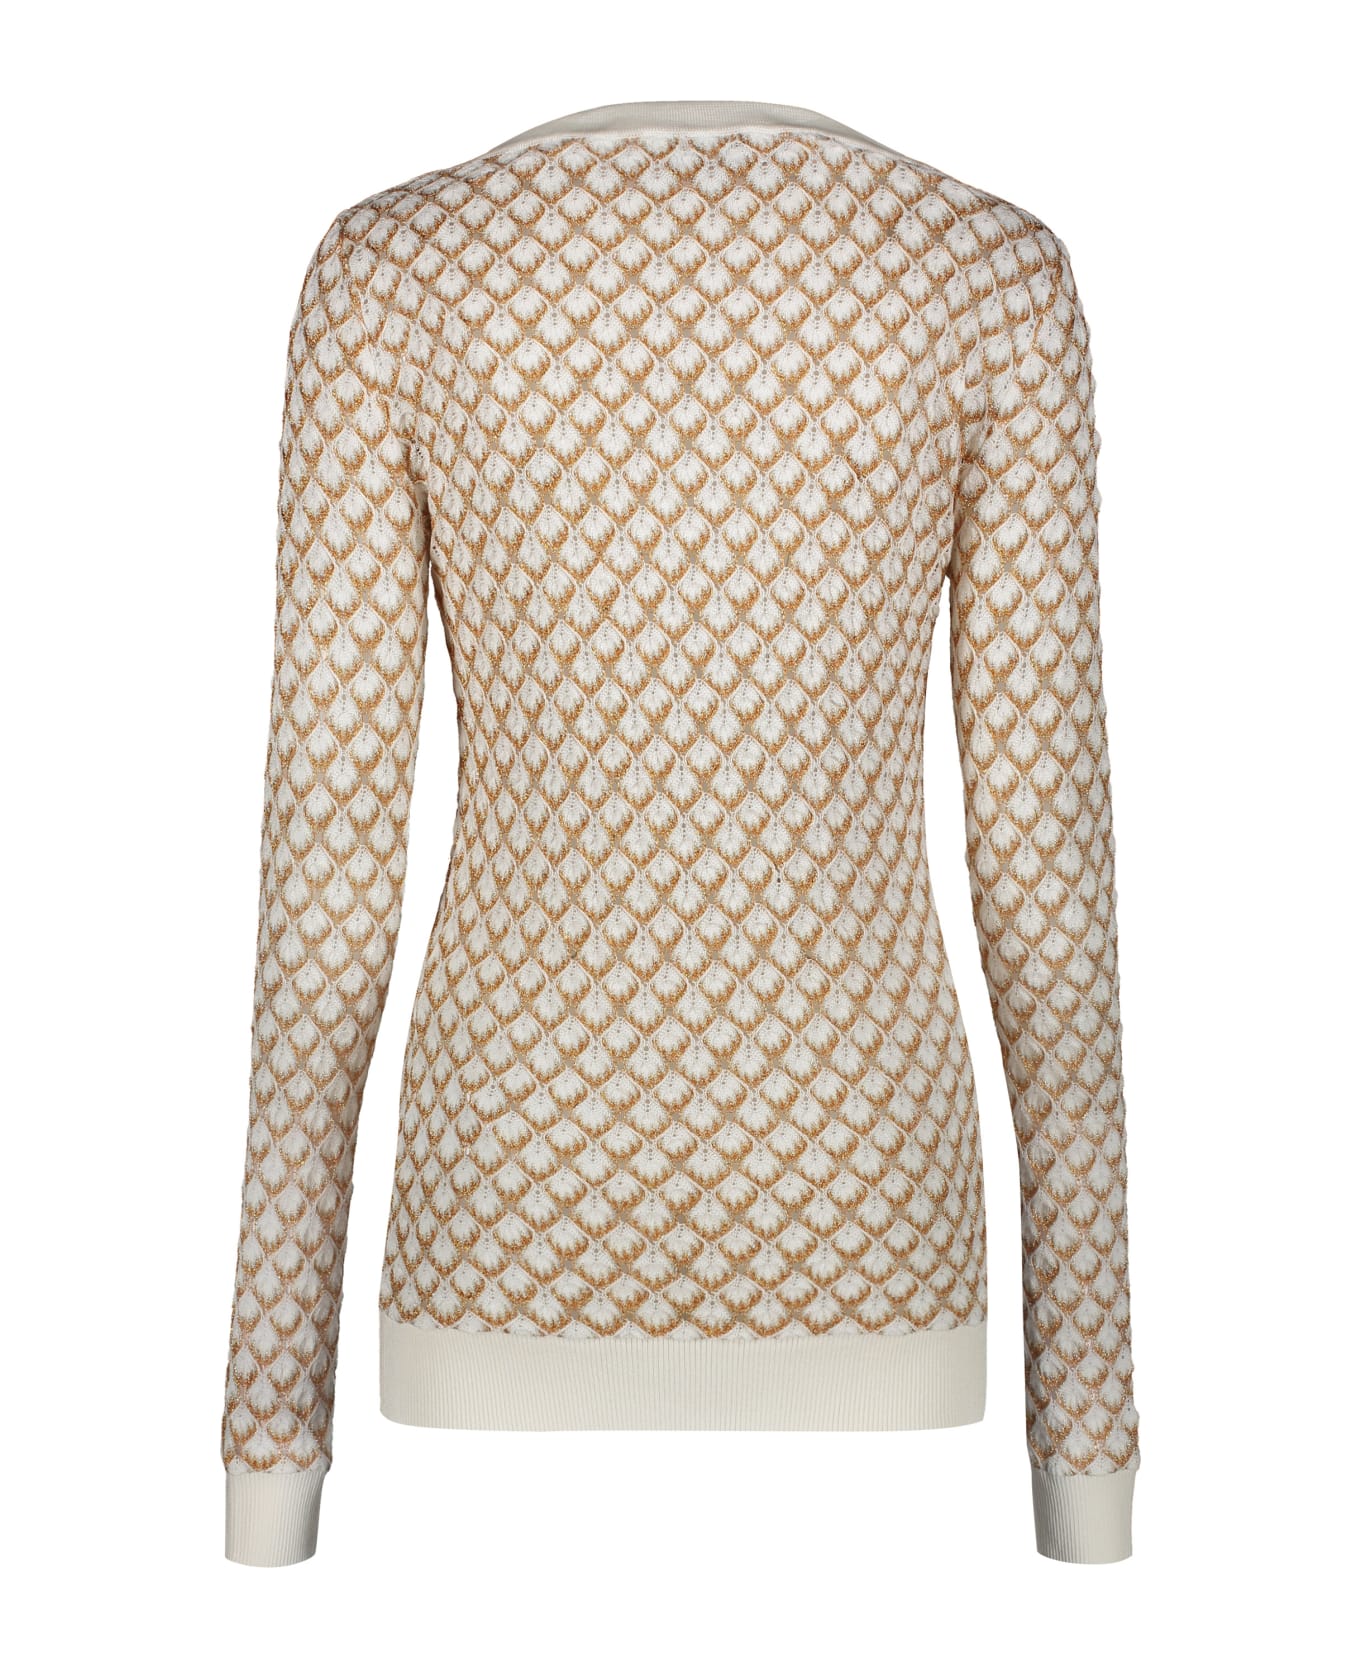 M Missoni Long Sleeve Sweater - White ニットウェア